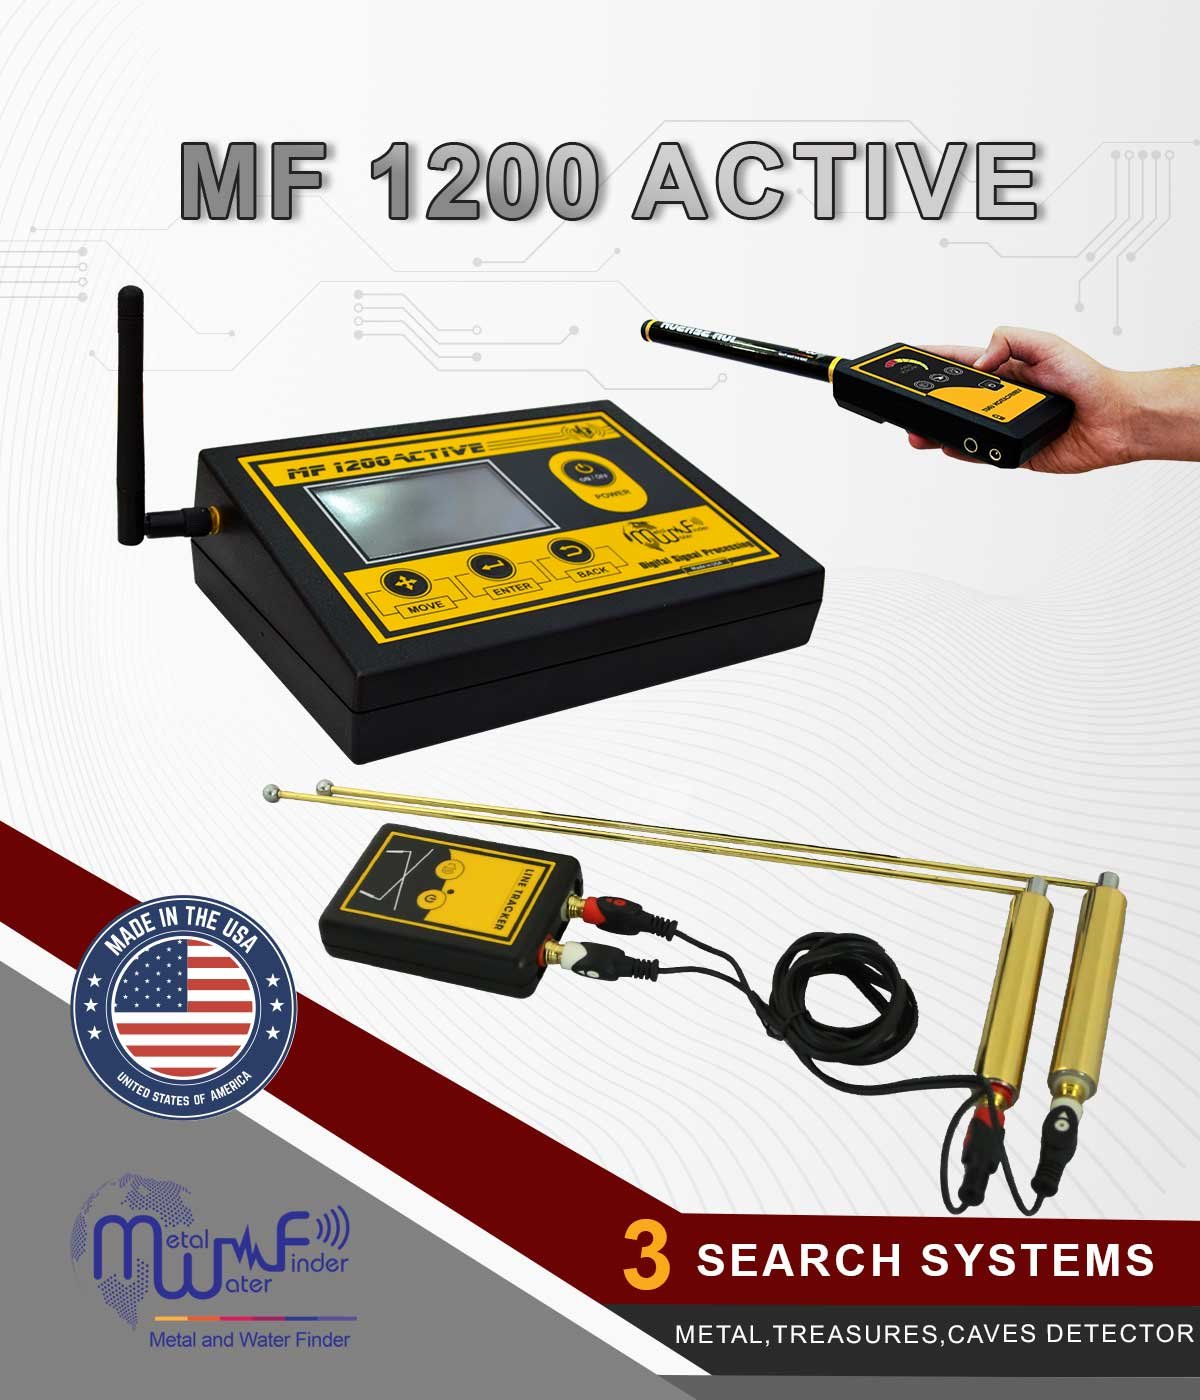 MF 1200 ACTIVE